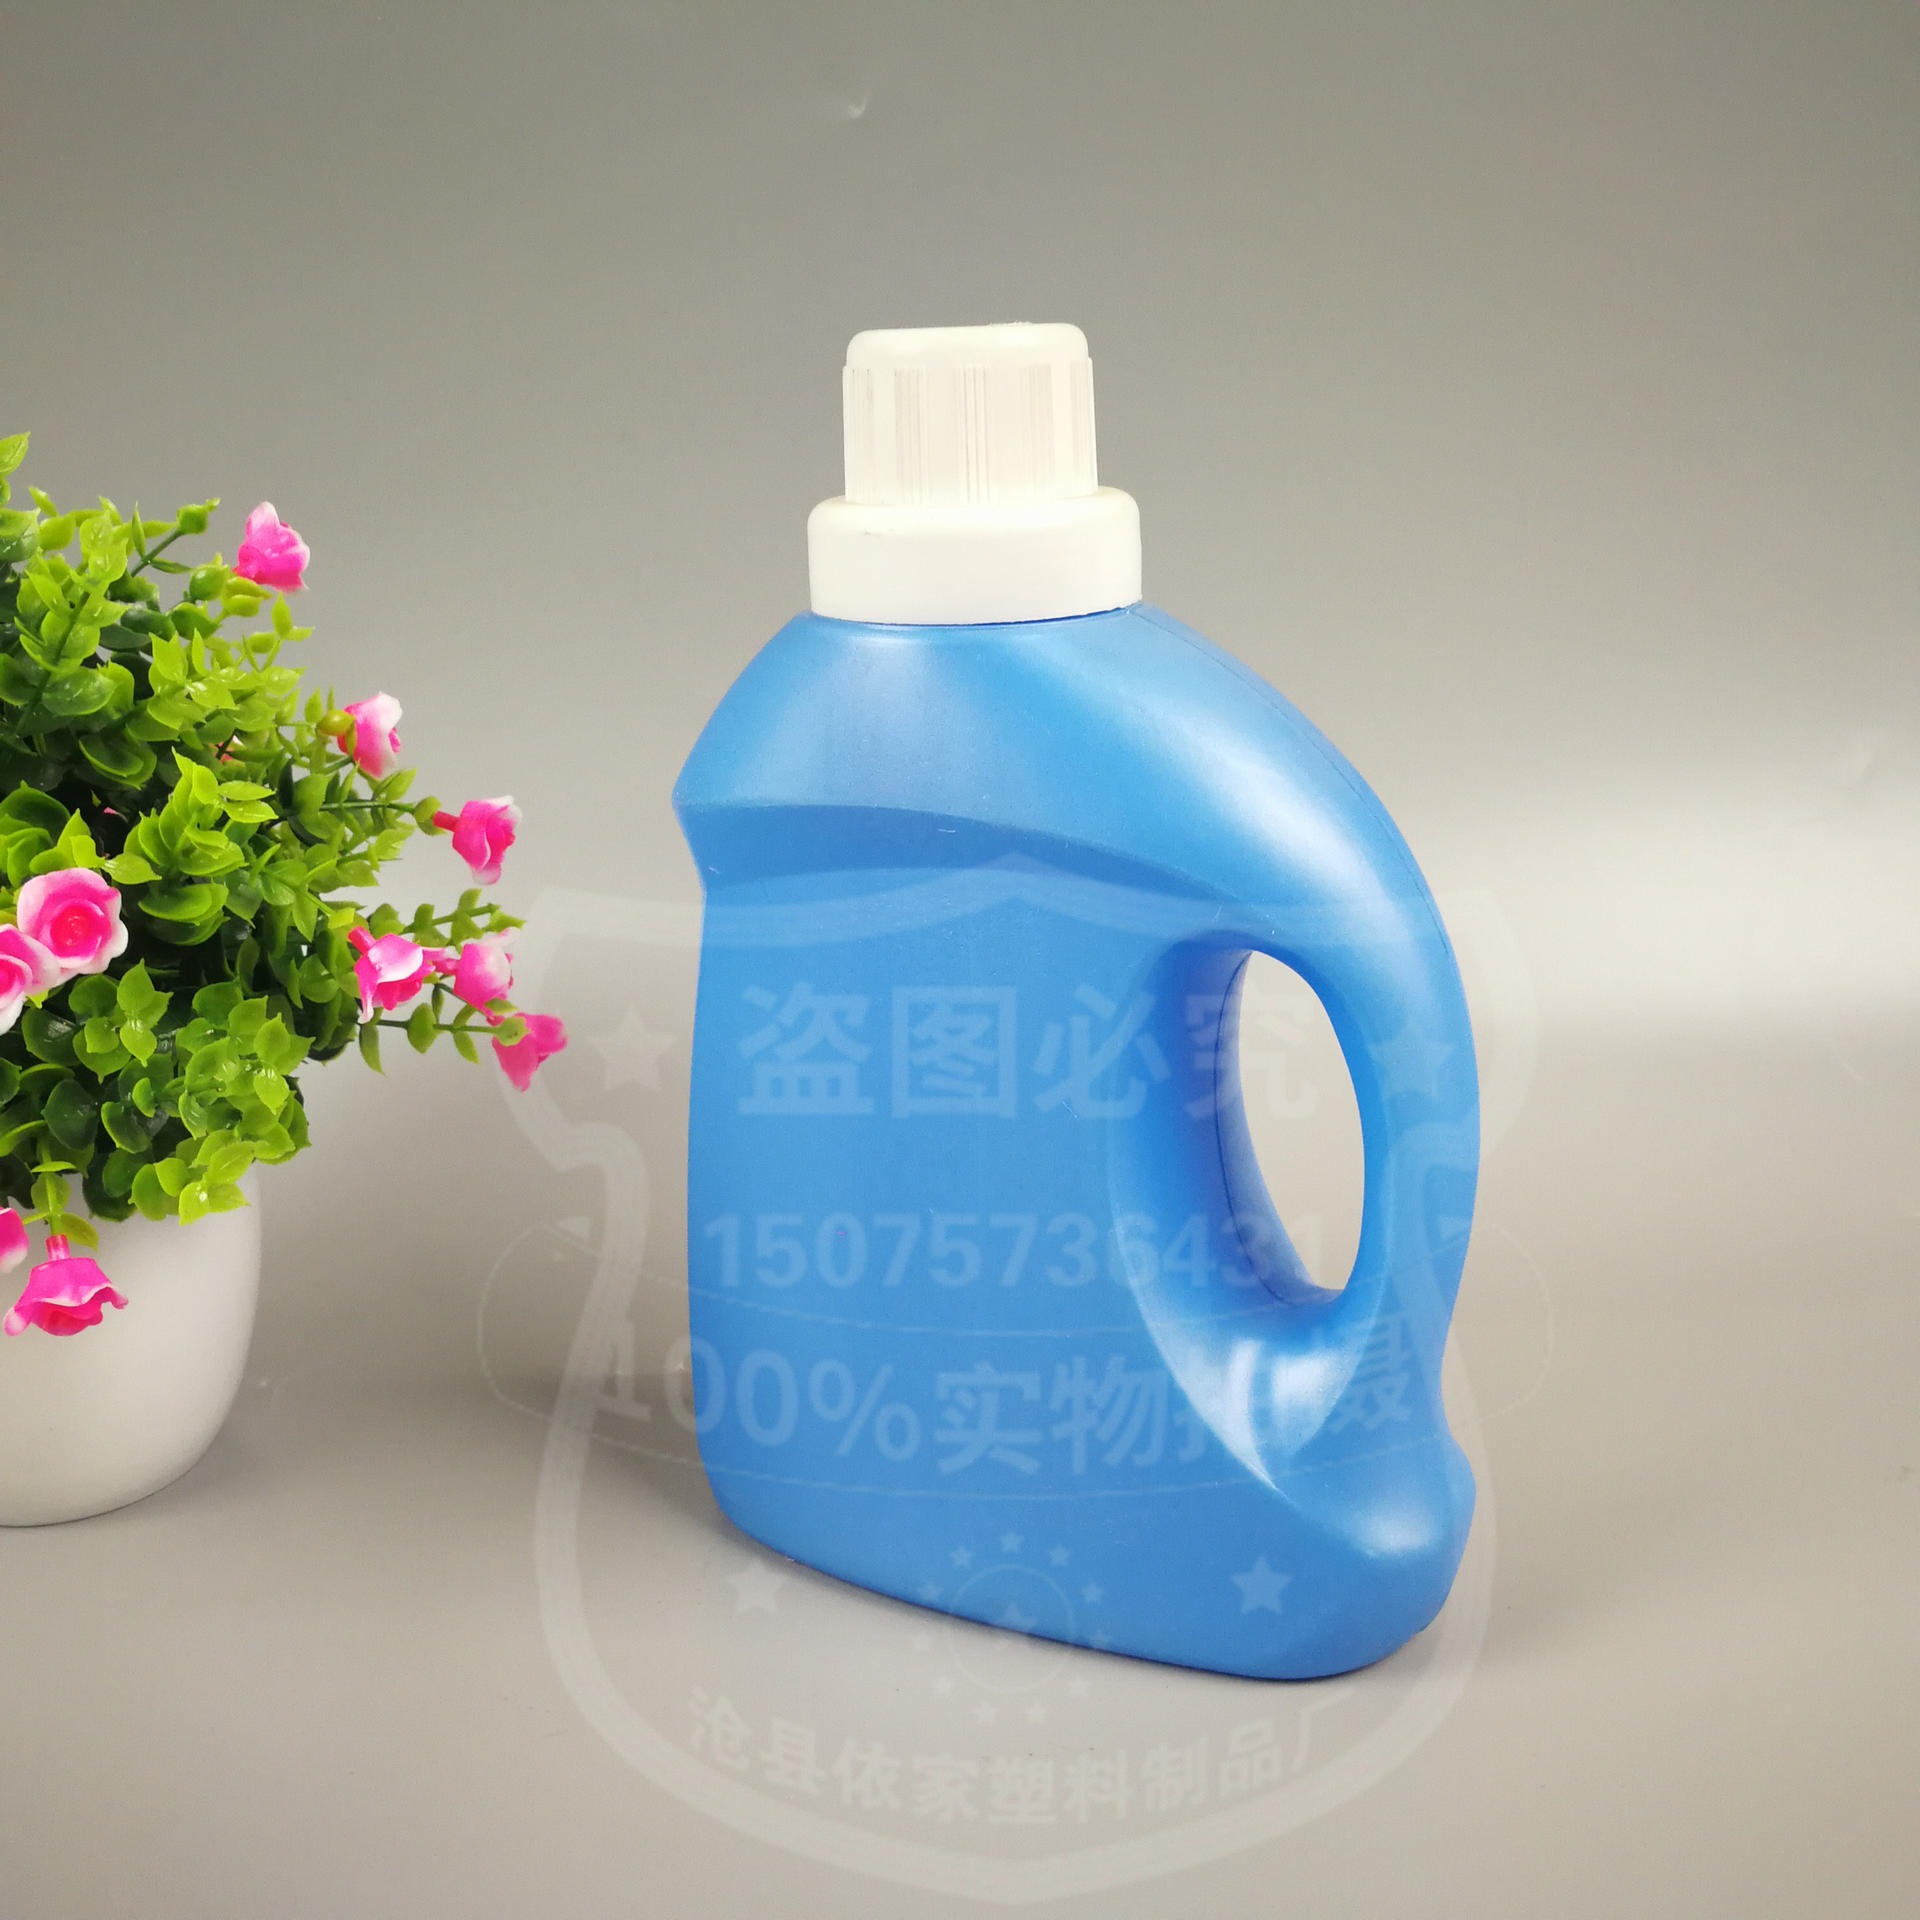 依家品牌供应 洗涤剂洗衣液桶 pe塑料包装瓶图片